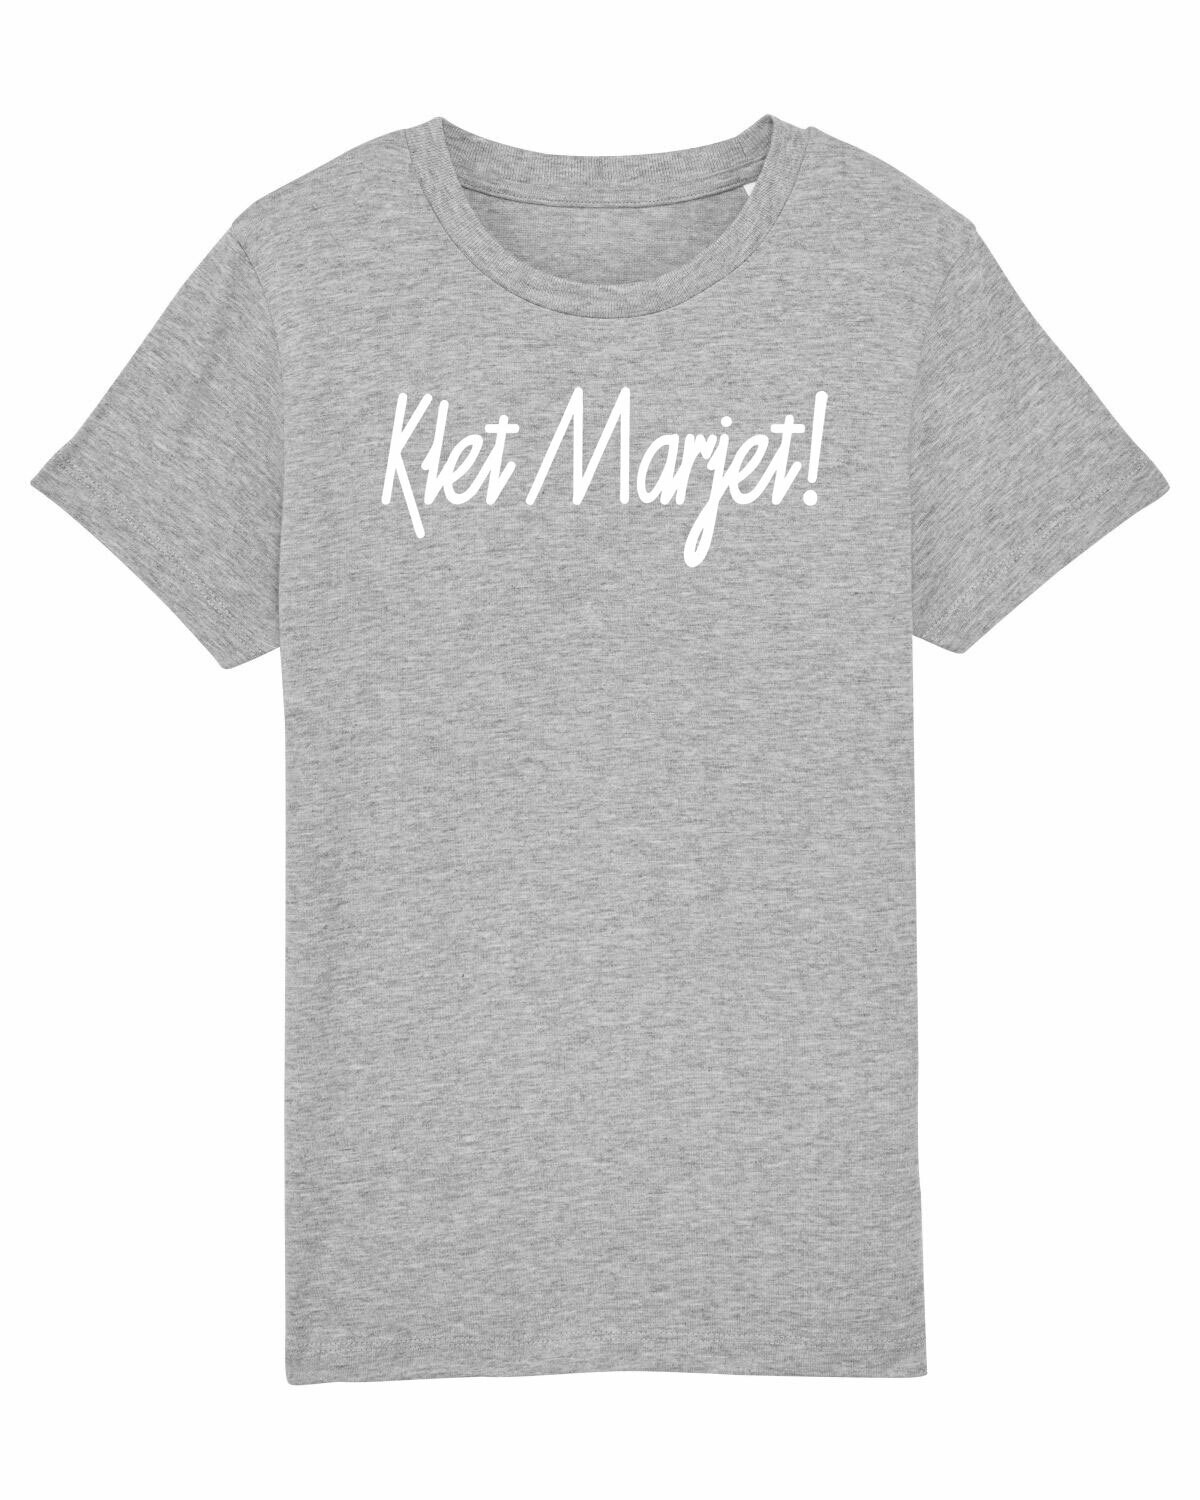 Kids T-shirt Klet Marjet!